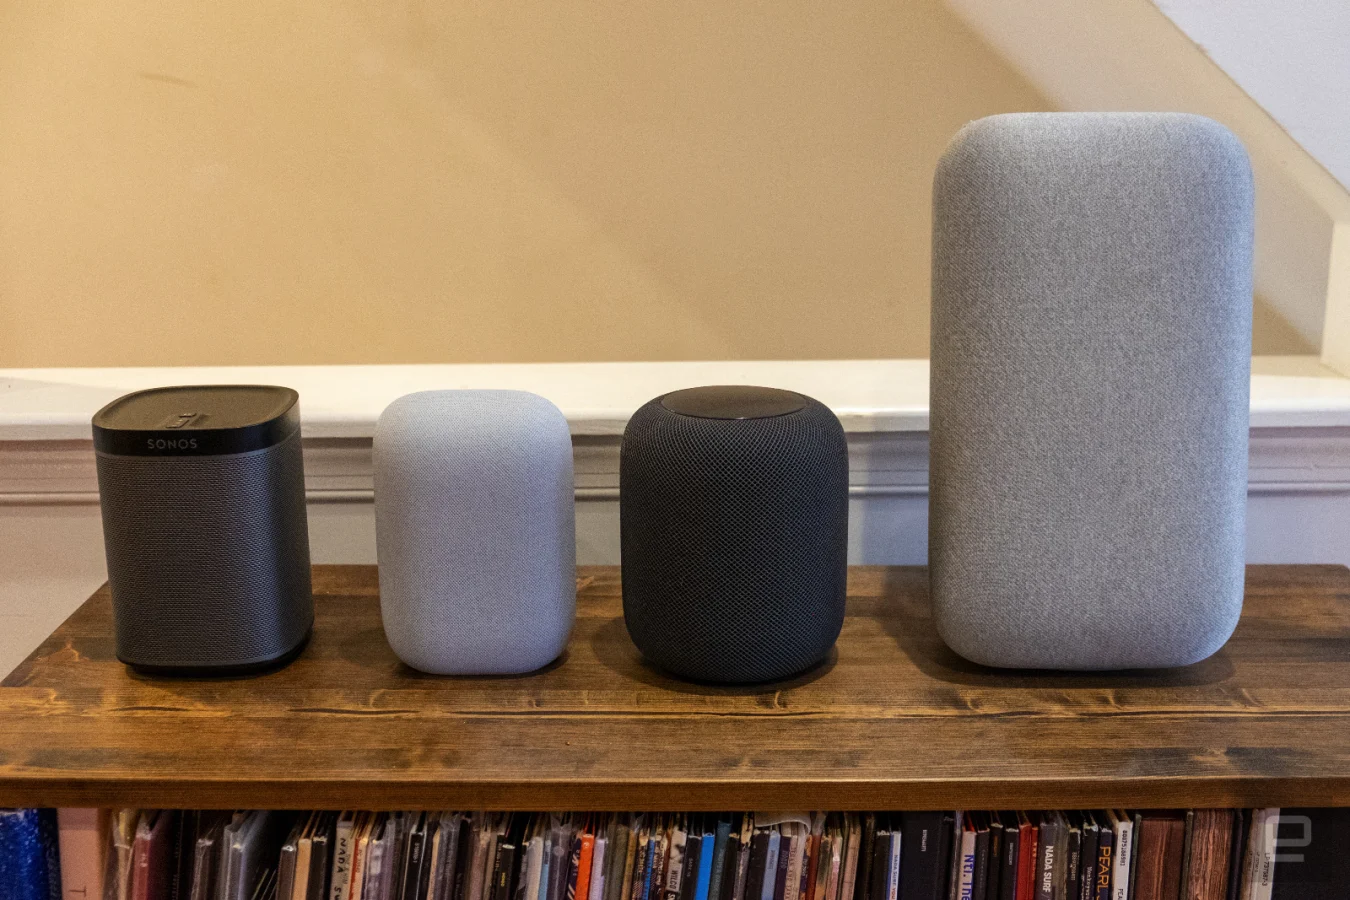 Google Nest Audio smart speaker